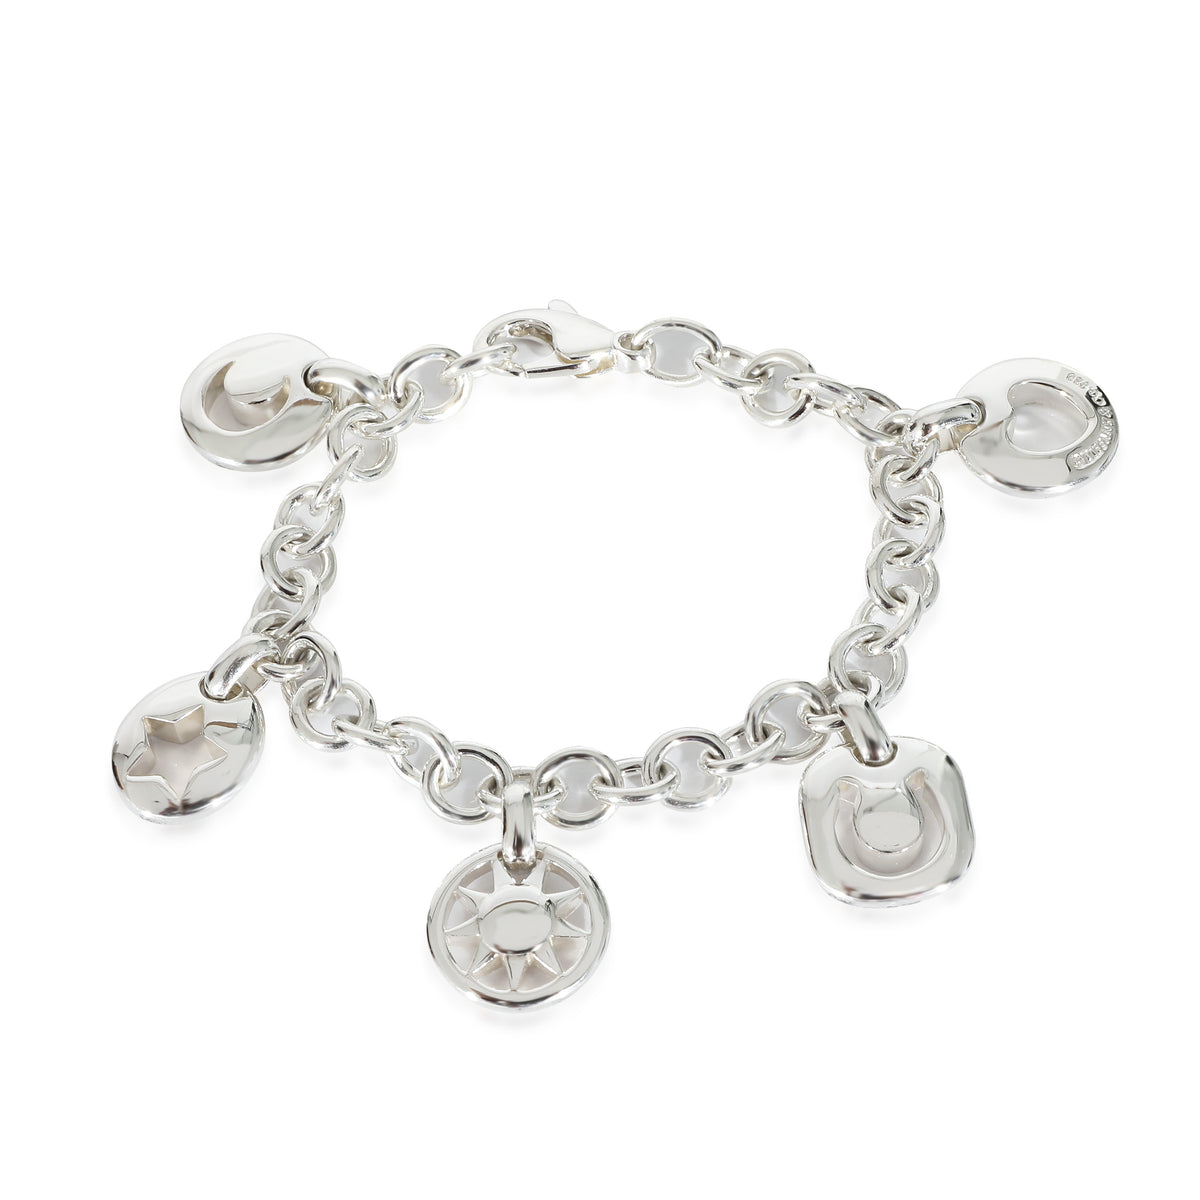 Tiffany & Co. Multi Charm Bracelet in Sterling Silver